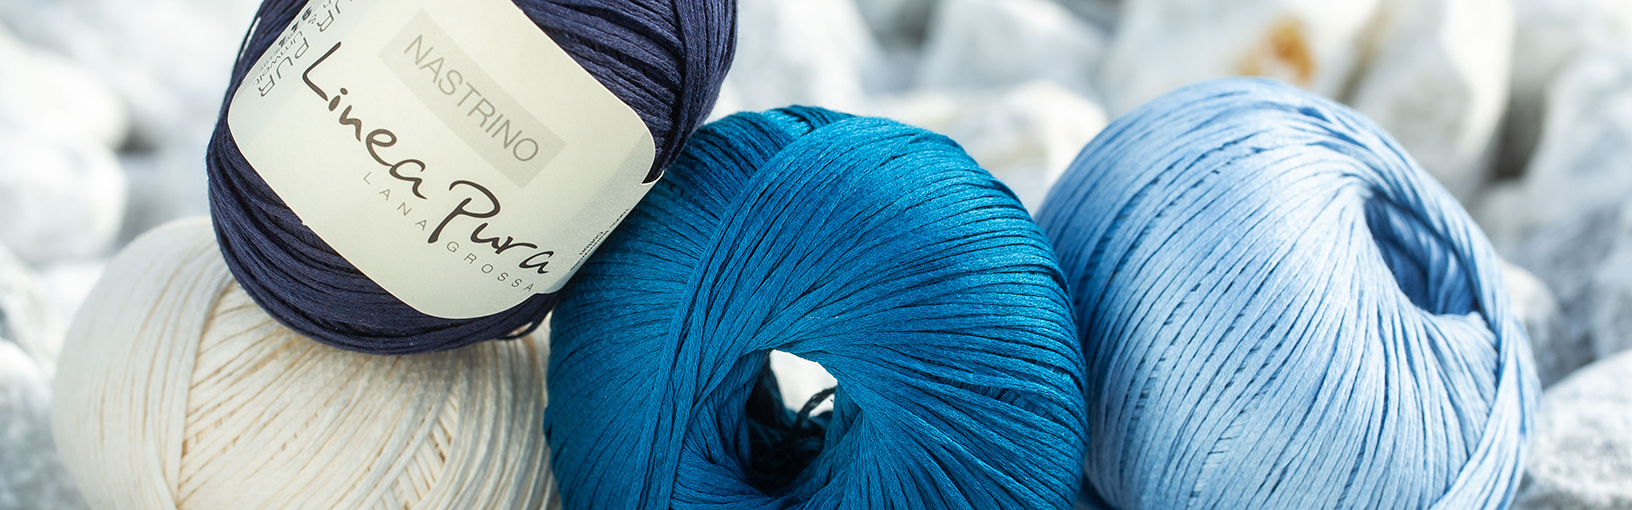 Высококачественная пряжа для вязки и свойлачивание Пряжа Lana Grossa | Носочная пряжа | Hand-dyed